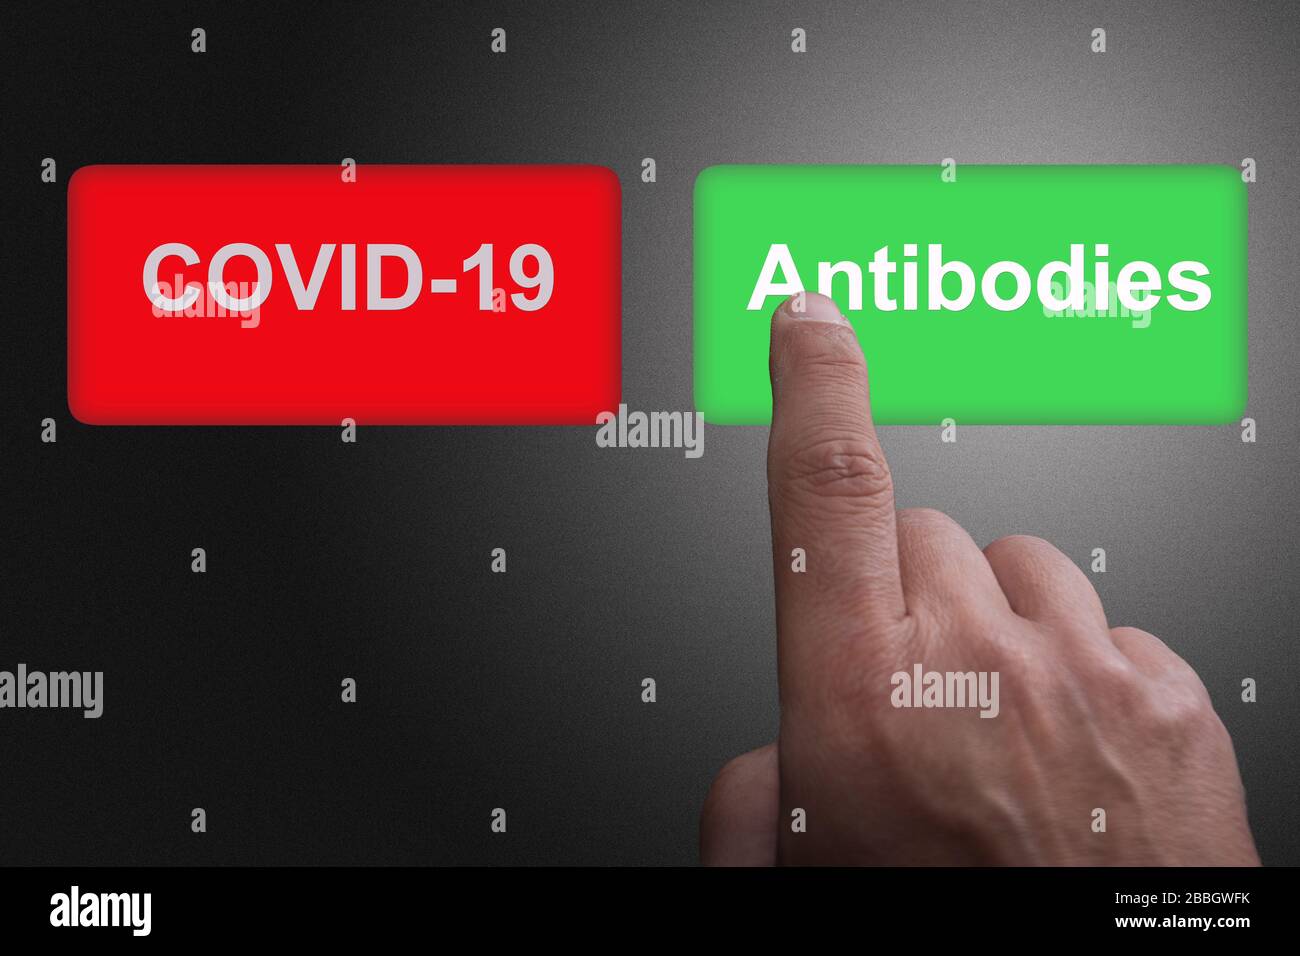 COVID-19 descubrimiento de la vacuna del virus o concepto de éxito de la investigación de anticuerpos, botones rojos y verdes con Covid-19 y texto de anticuerpos Foto de stock